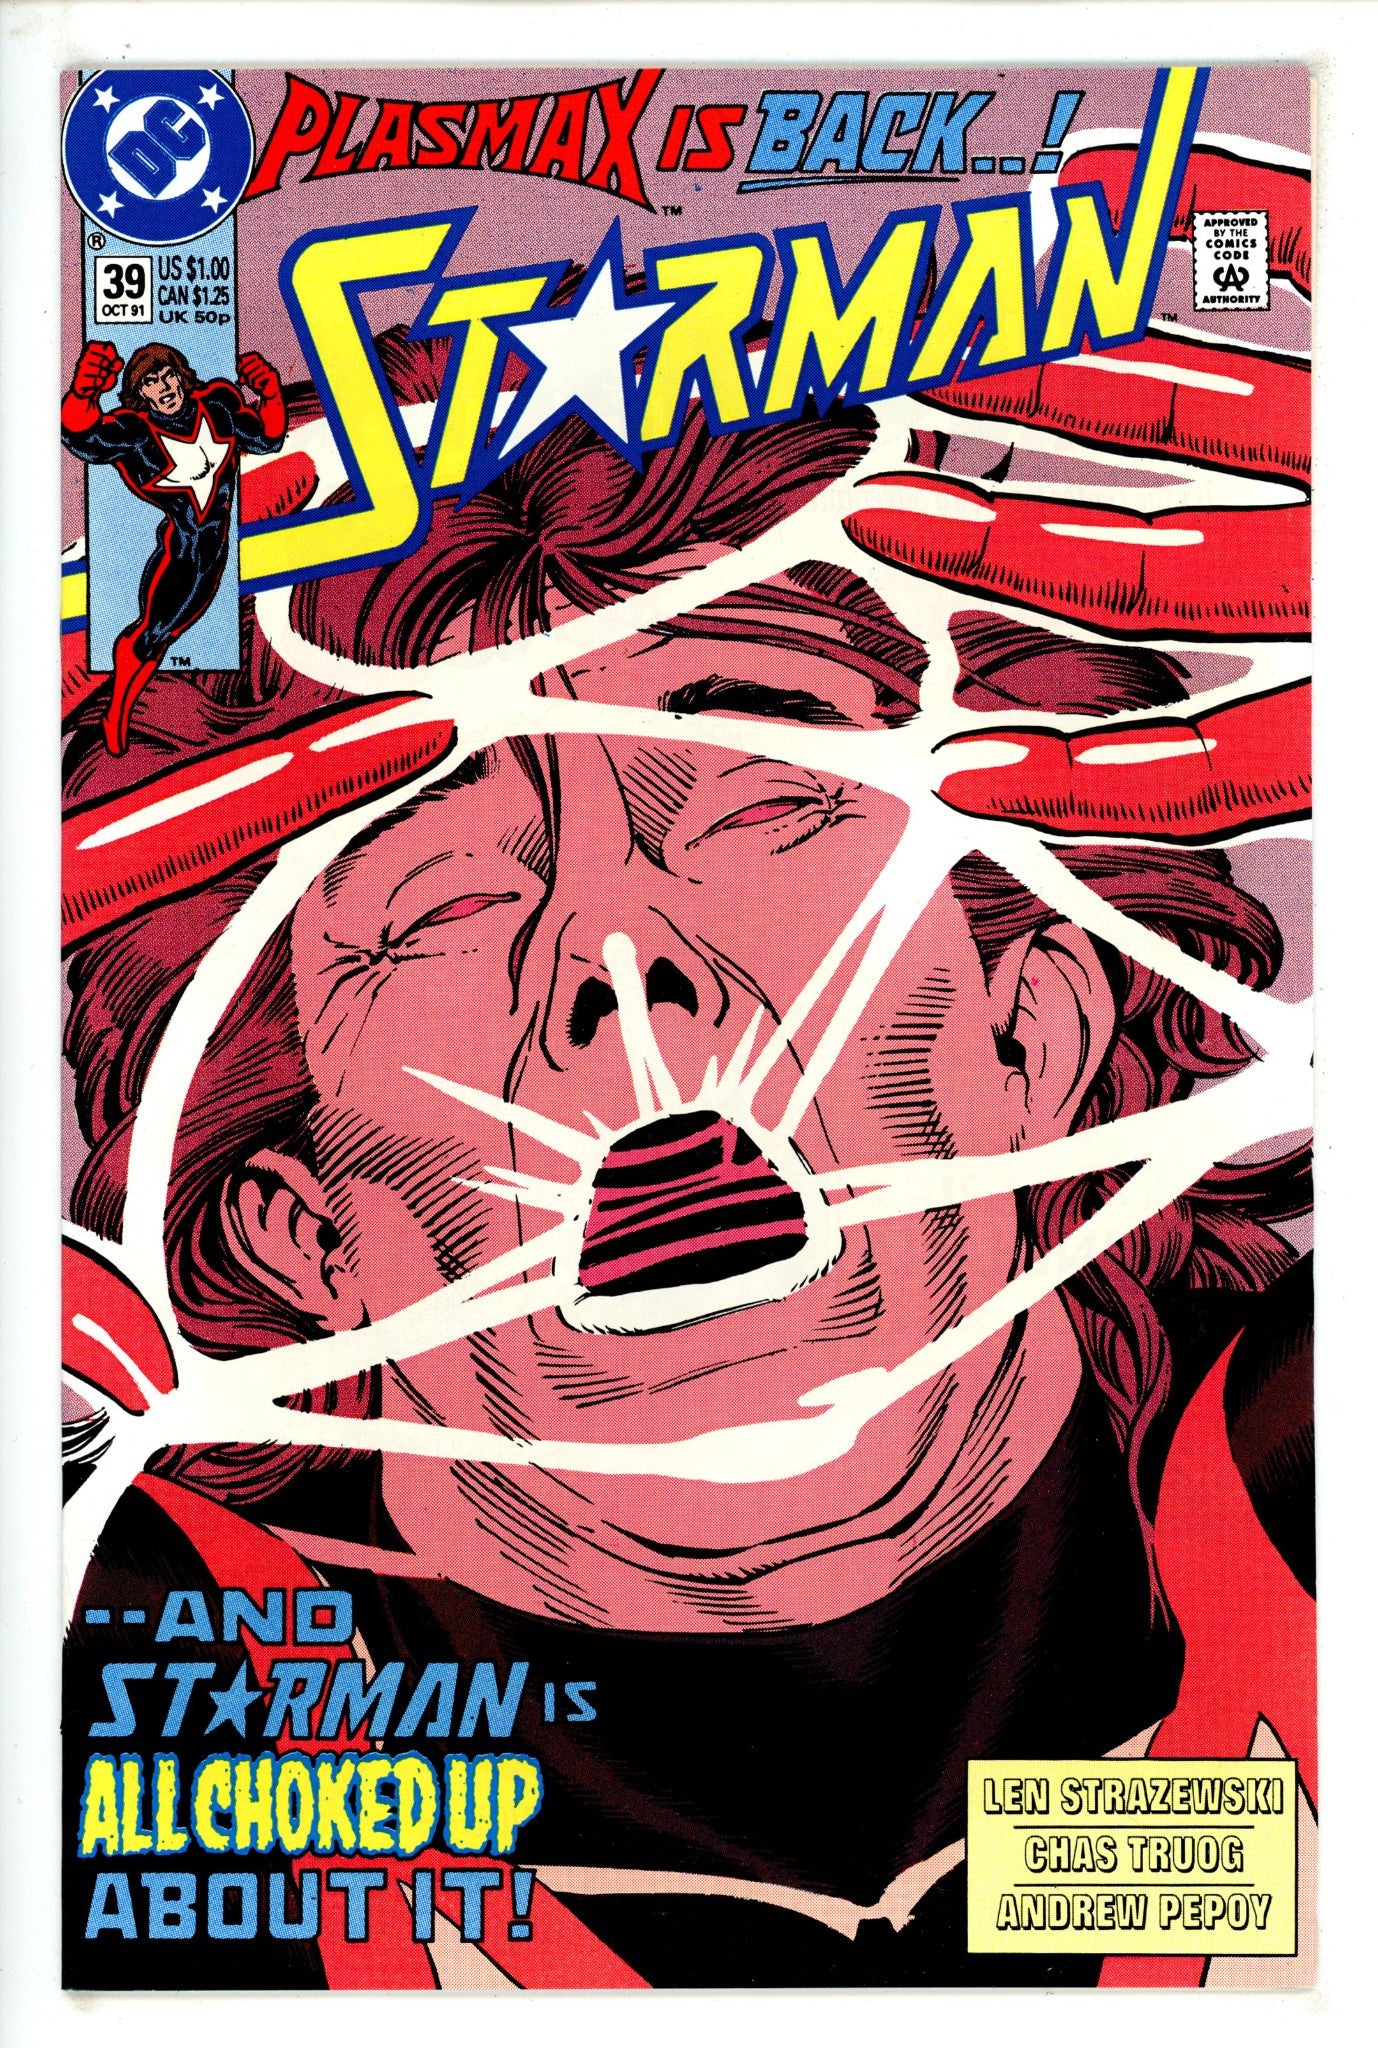 Starman Vol 1 39 (1991)